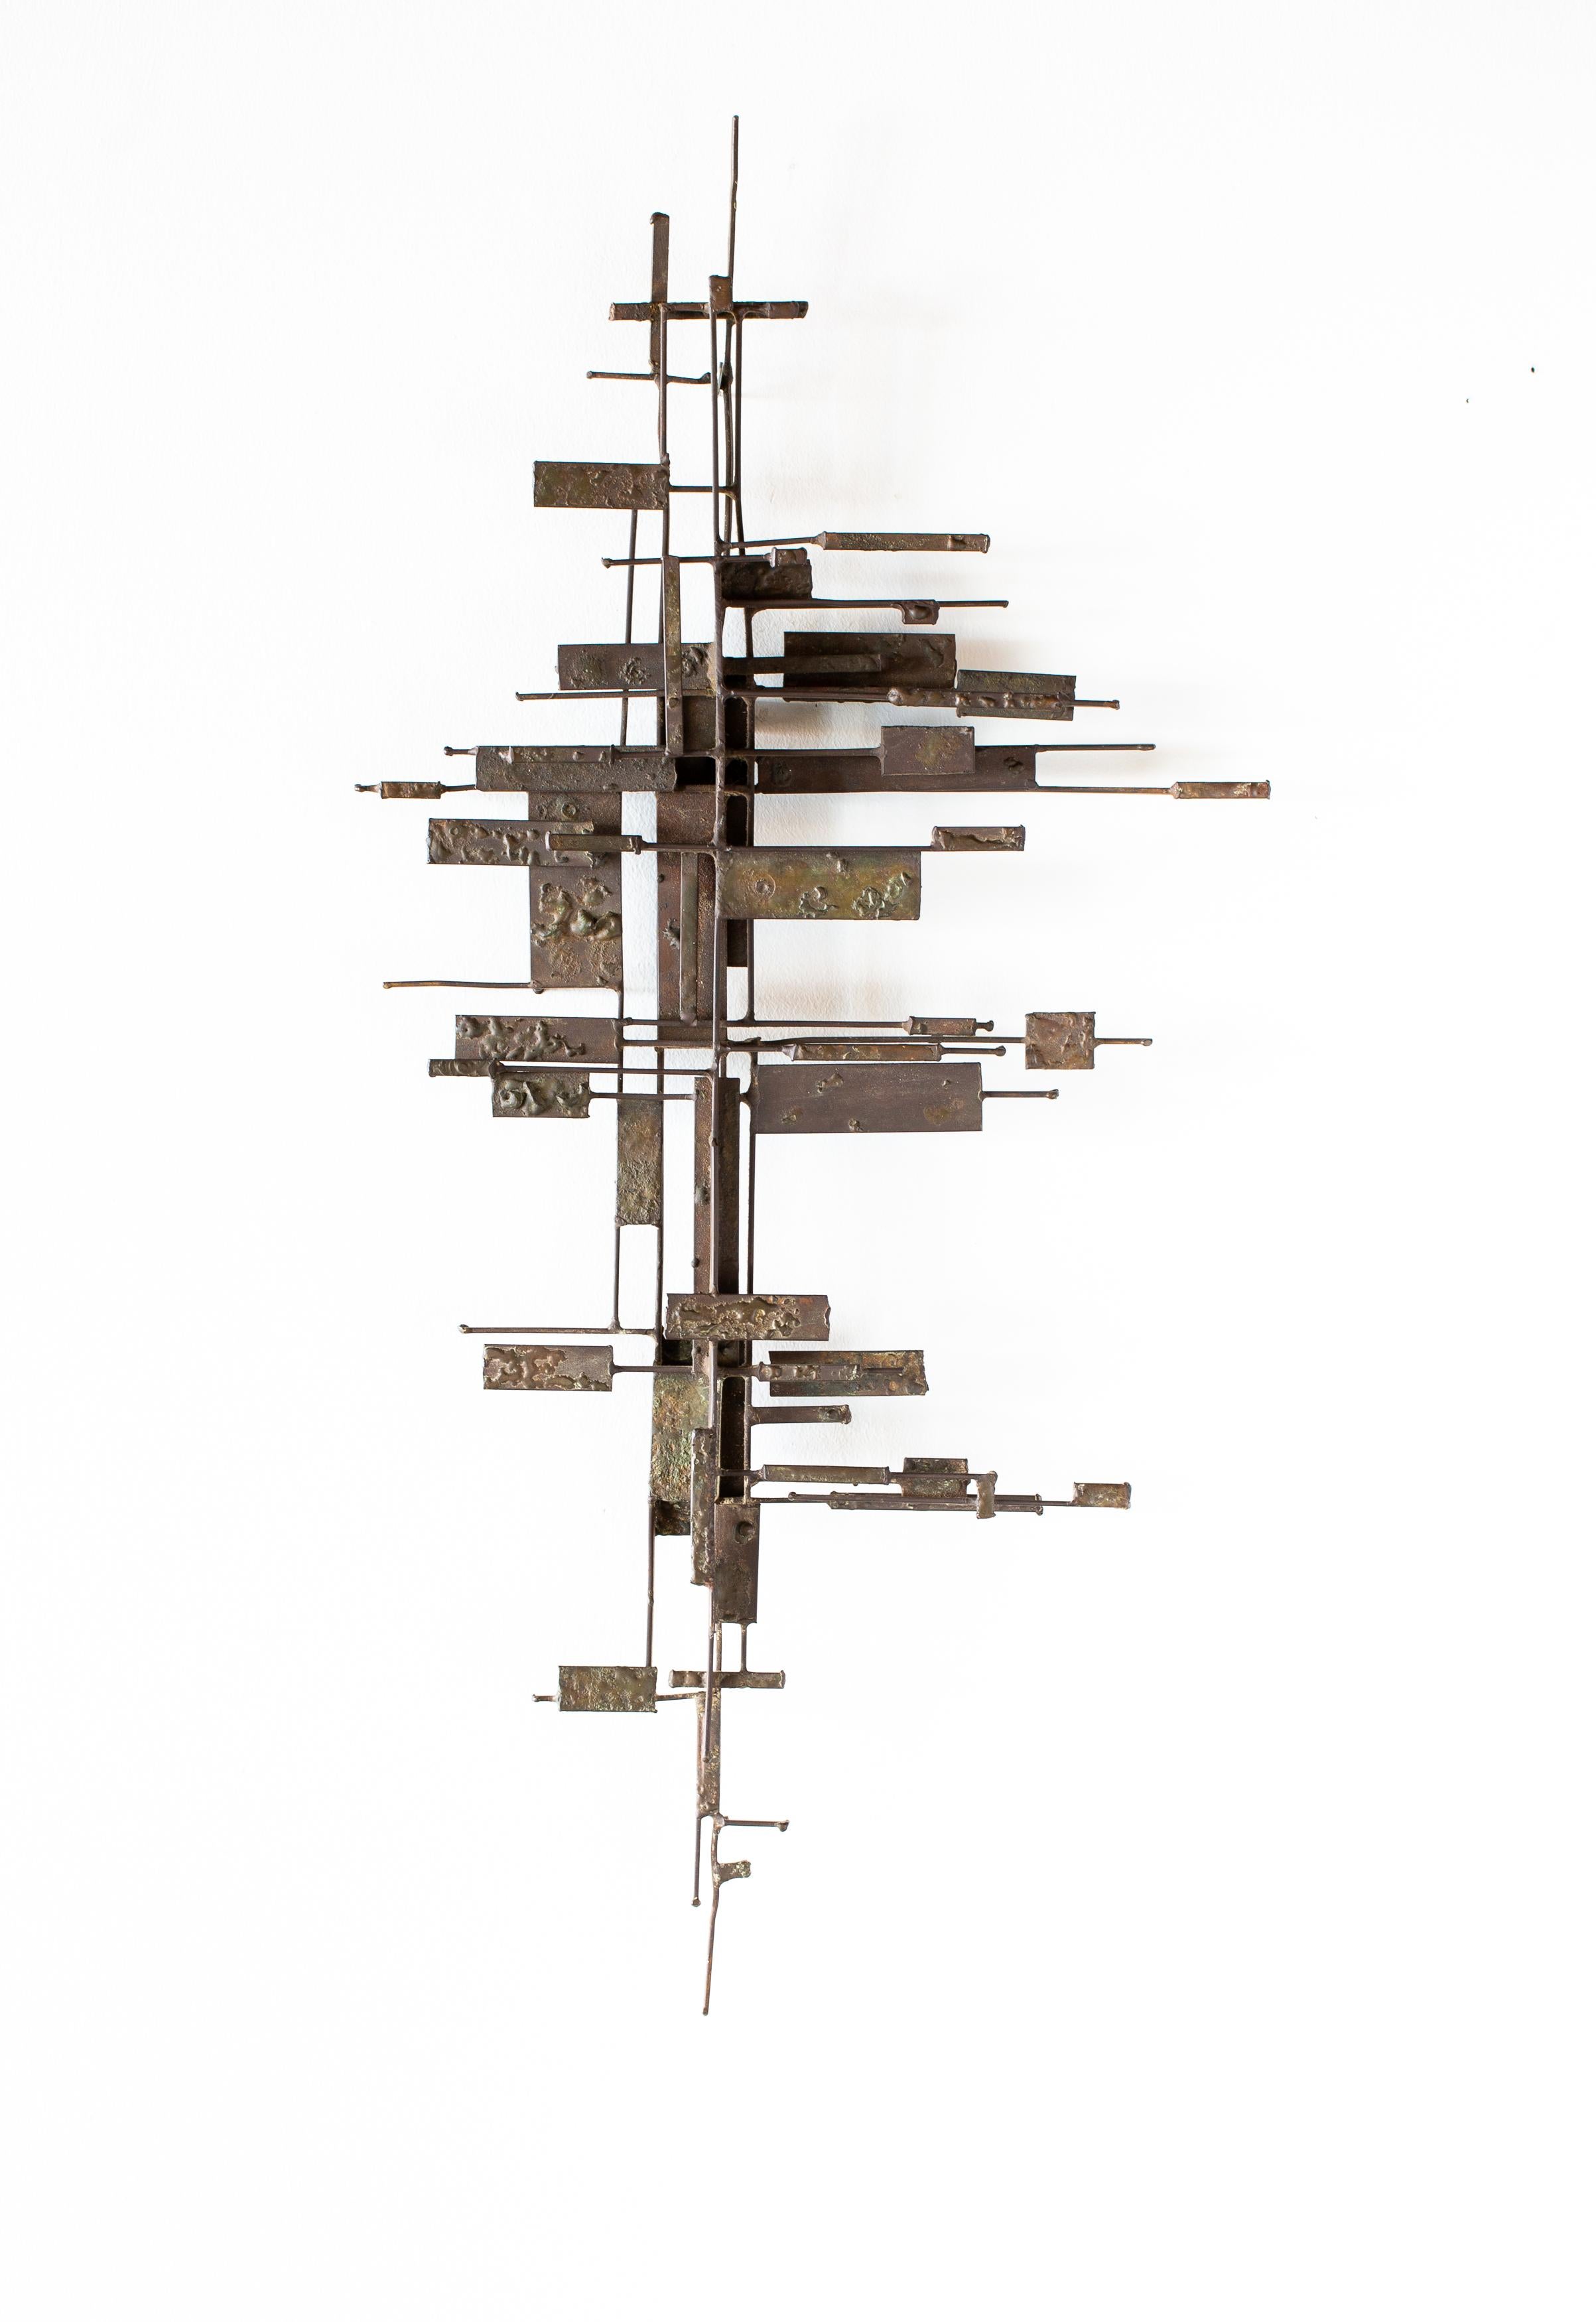 Seltene abstrakte/zeitgenössische Stahlwandskulptur von Jack Boyd aus San Diego, Kalifornien, Anfang der 1960er Jahre. Diese einzigartige Skulptur besteht aus verschlungenen, übereinander gestapelten Stahlplatten, die mit einer Bronzestruktur